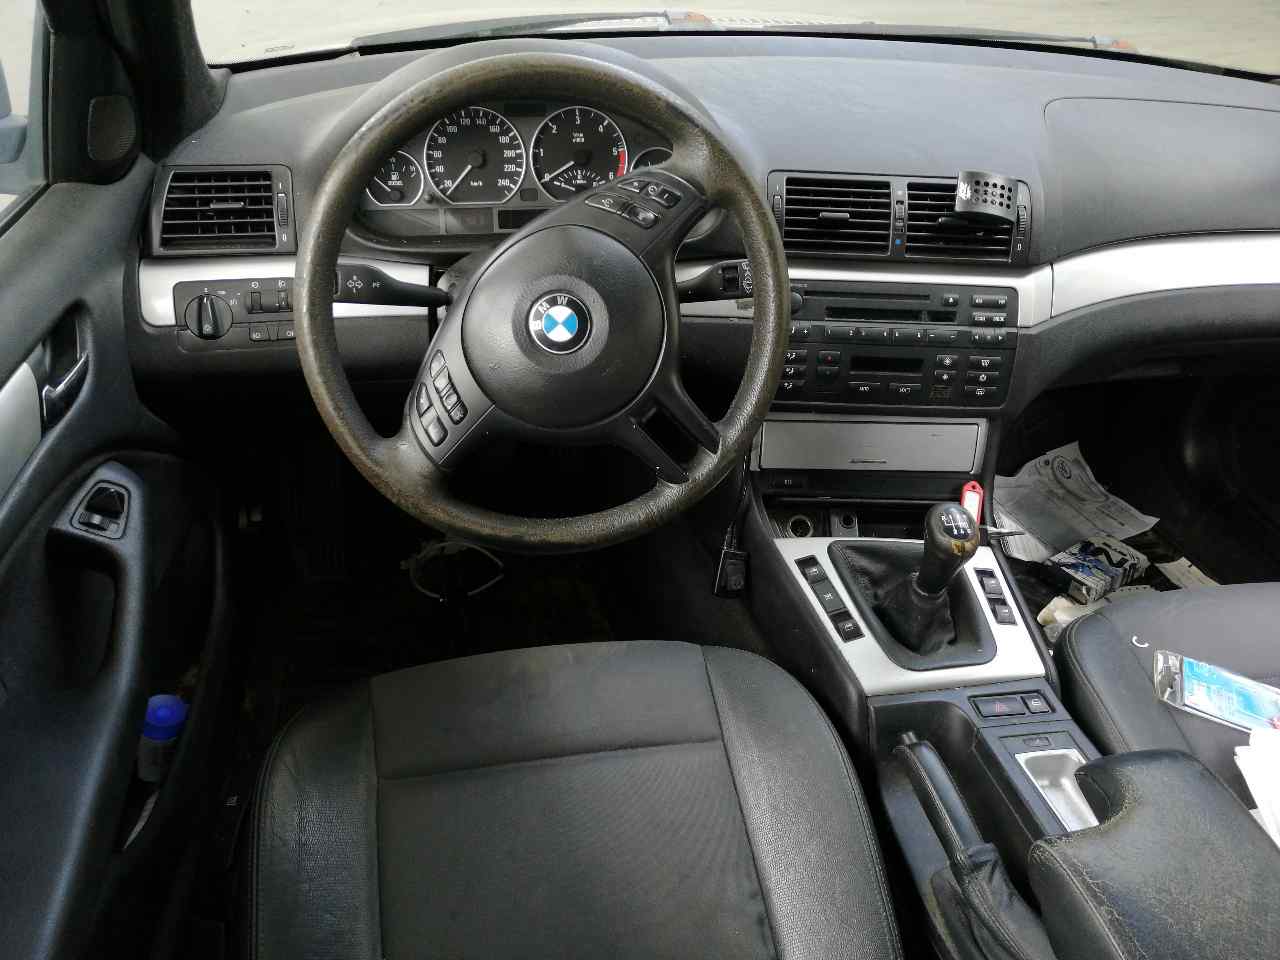 BMW 3 Series E46 (1997-2006) Rear Left Door 41527034155, GRISOSCURO, 5PUERTAS 24146570